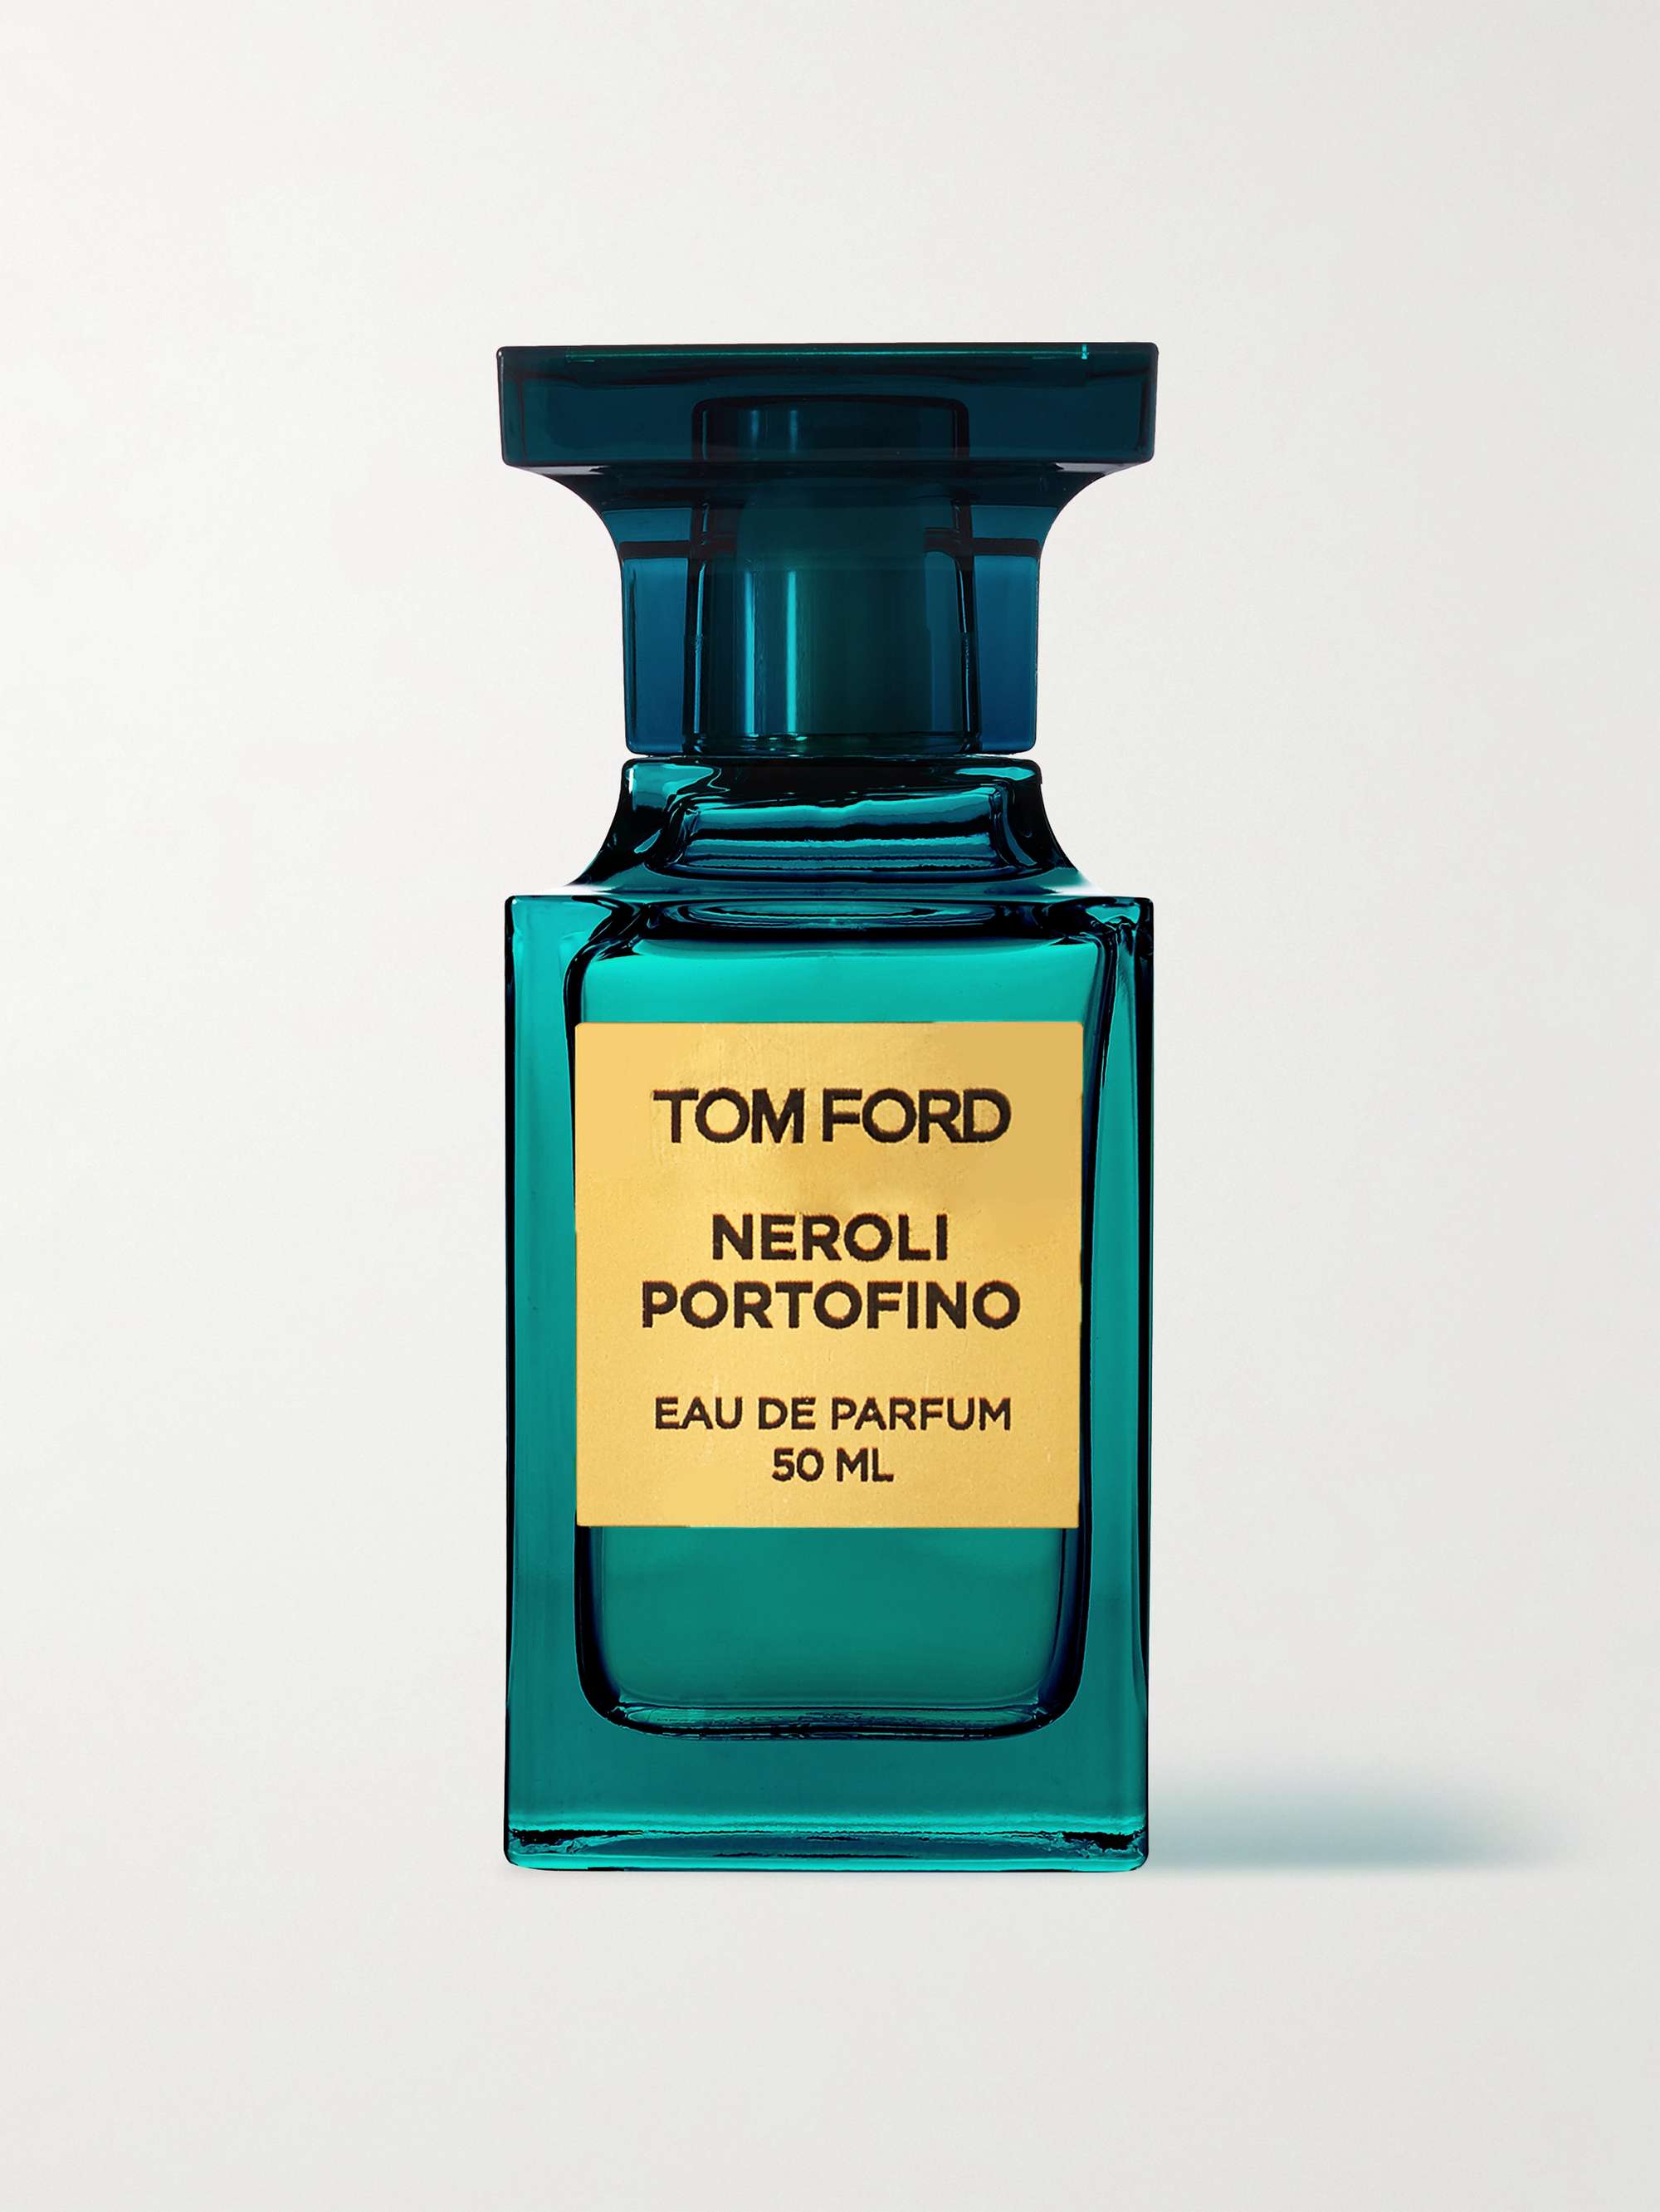 TOM FORD BEAUTY Portofino Eau de Parfum - Neroli, Bergamot & Lemon, 50ml for | MR PORTER